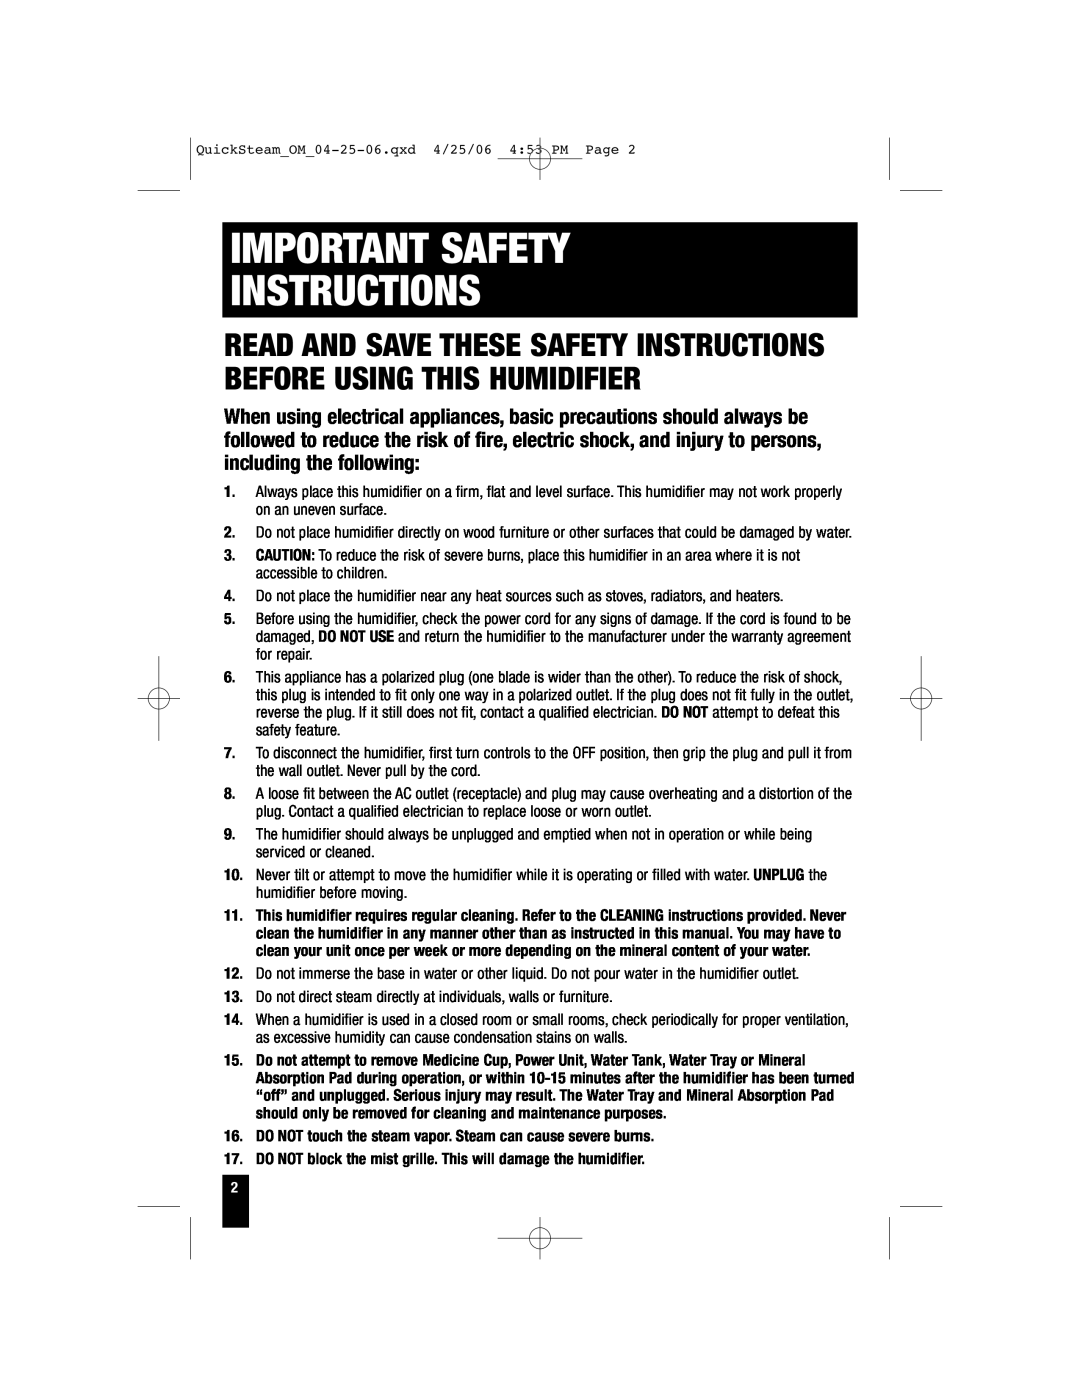 Honeywell HWM-330, HWM-450, HWM-335, HWM-331 owner manual Important Safety Instructions 